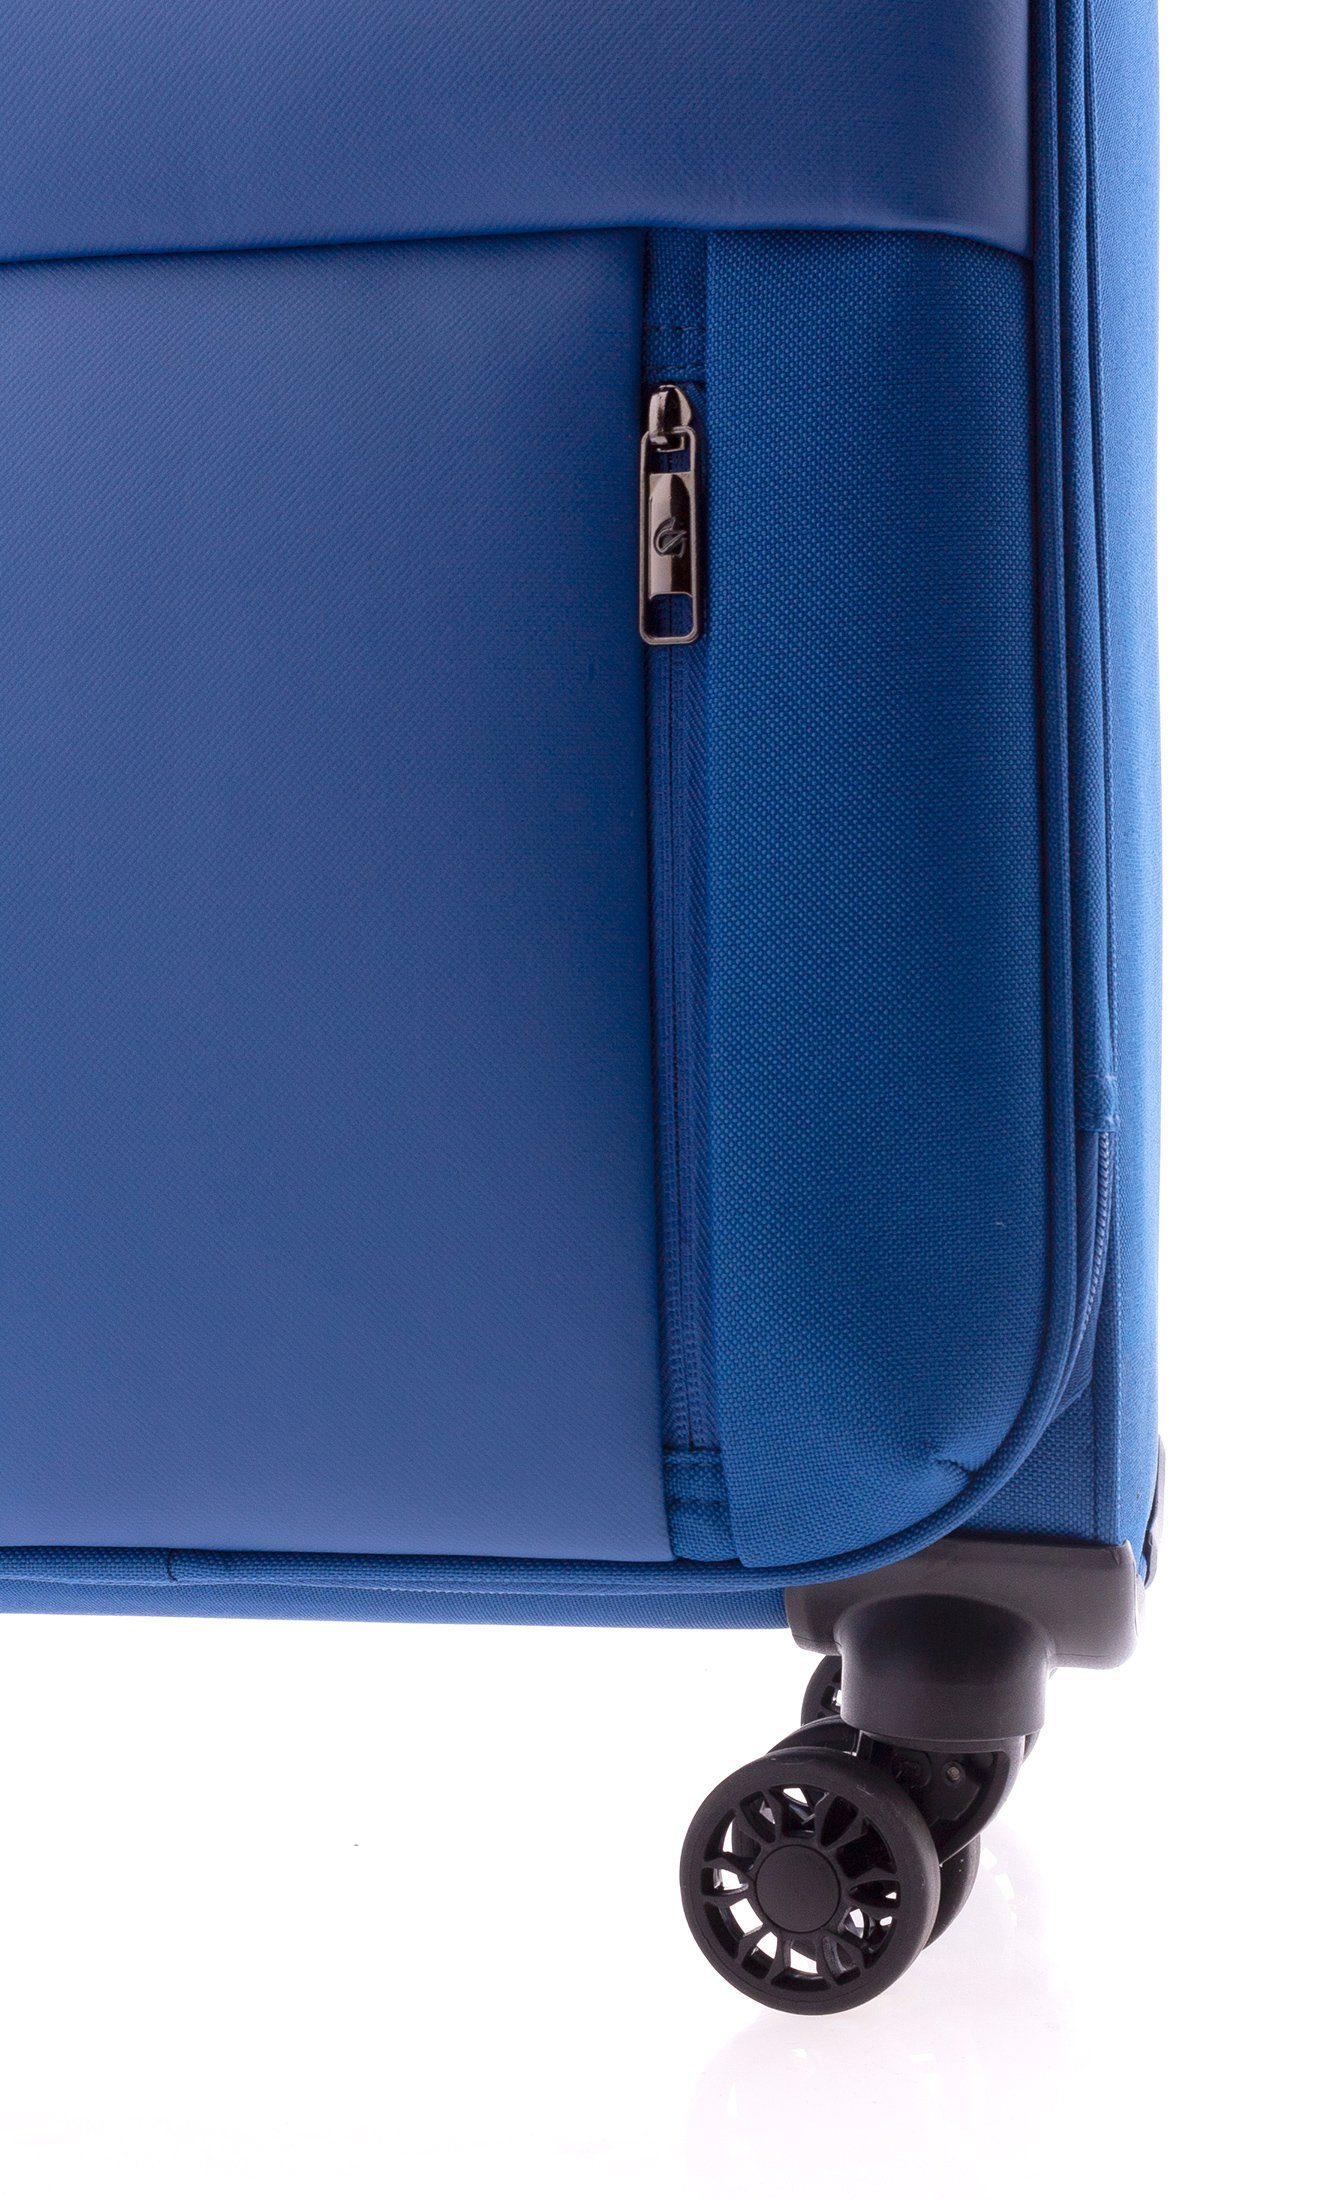 GLADIATOR Weichgepäck-Trolley XL - - kg, TSA-Schloss, div. 4 Rollen, 102/113 3,6 cm Farben 78 blau Liter, Volumen